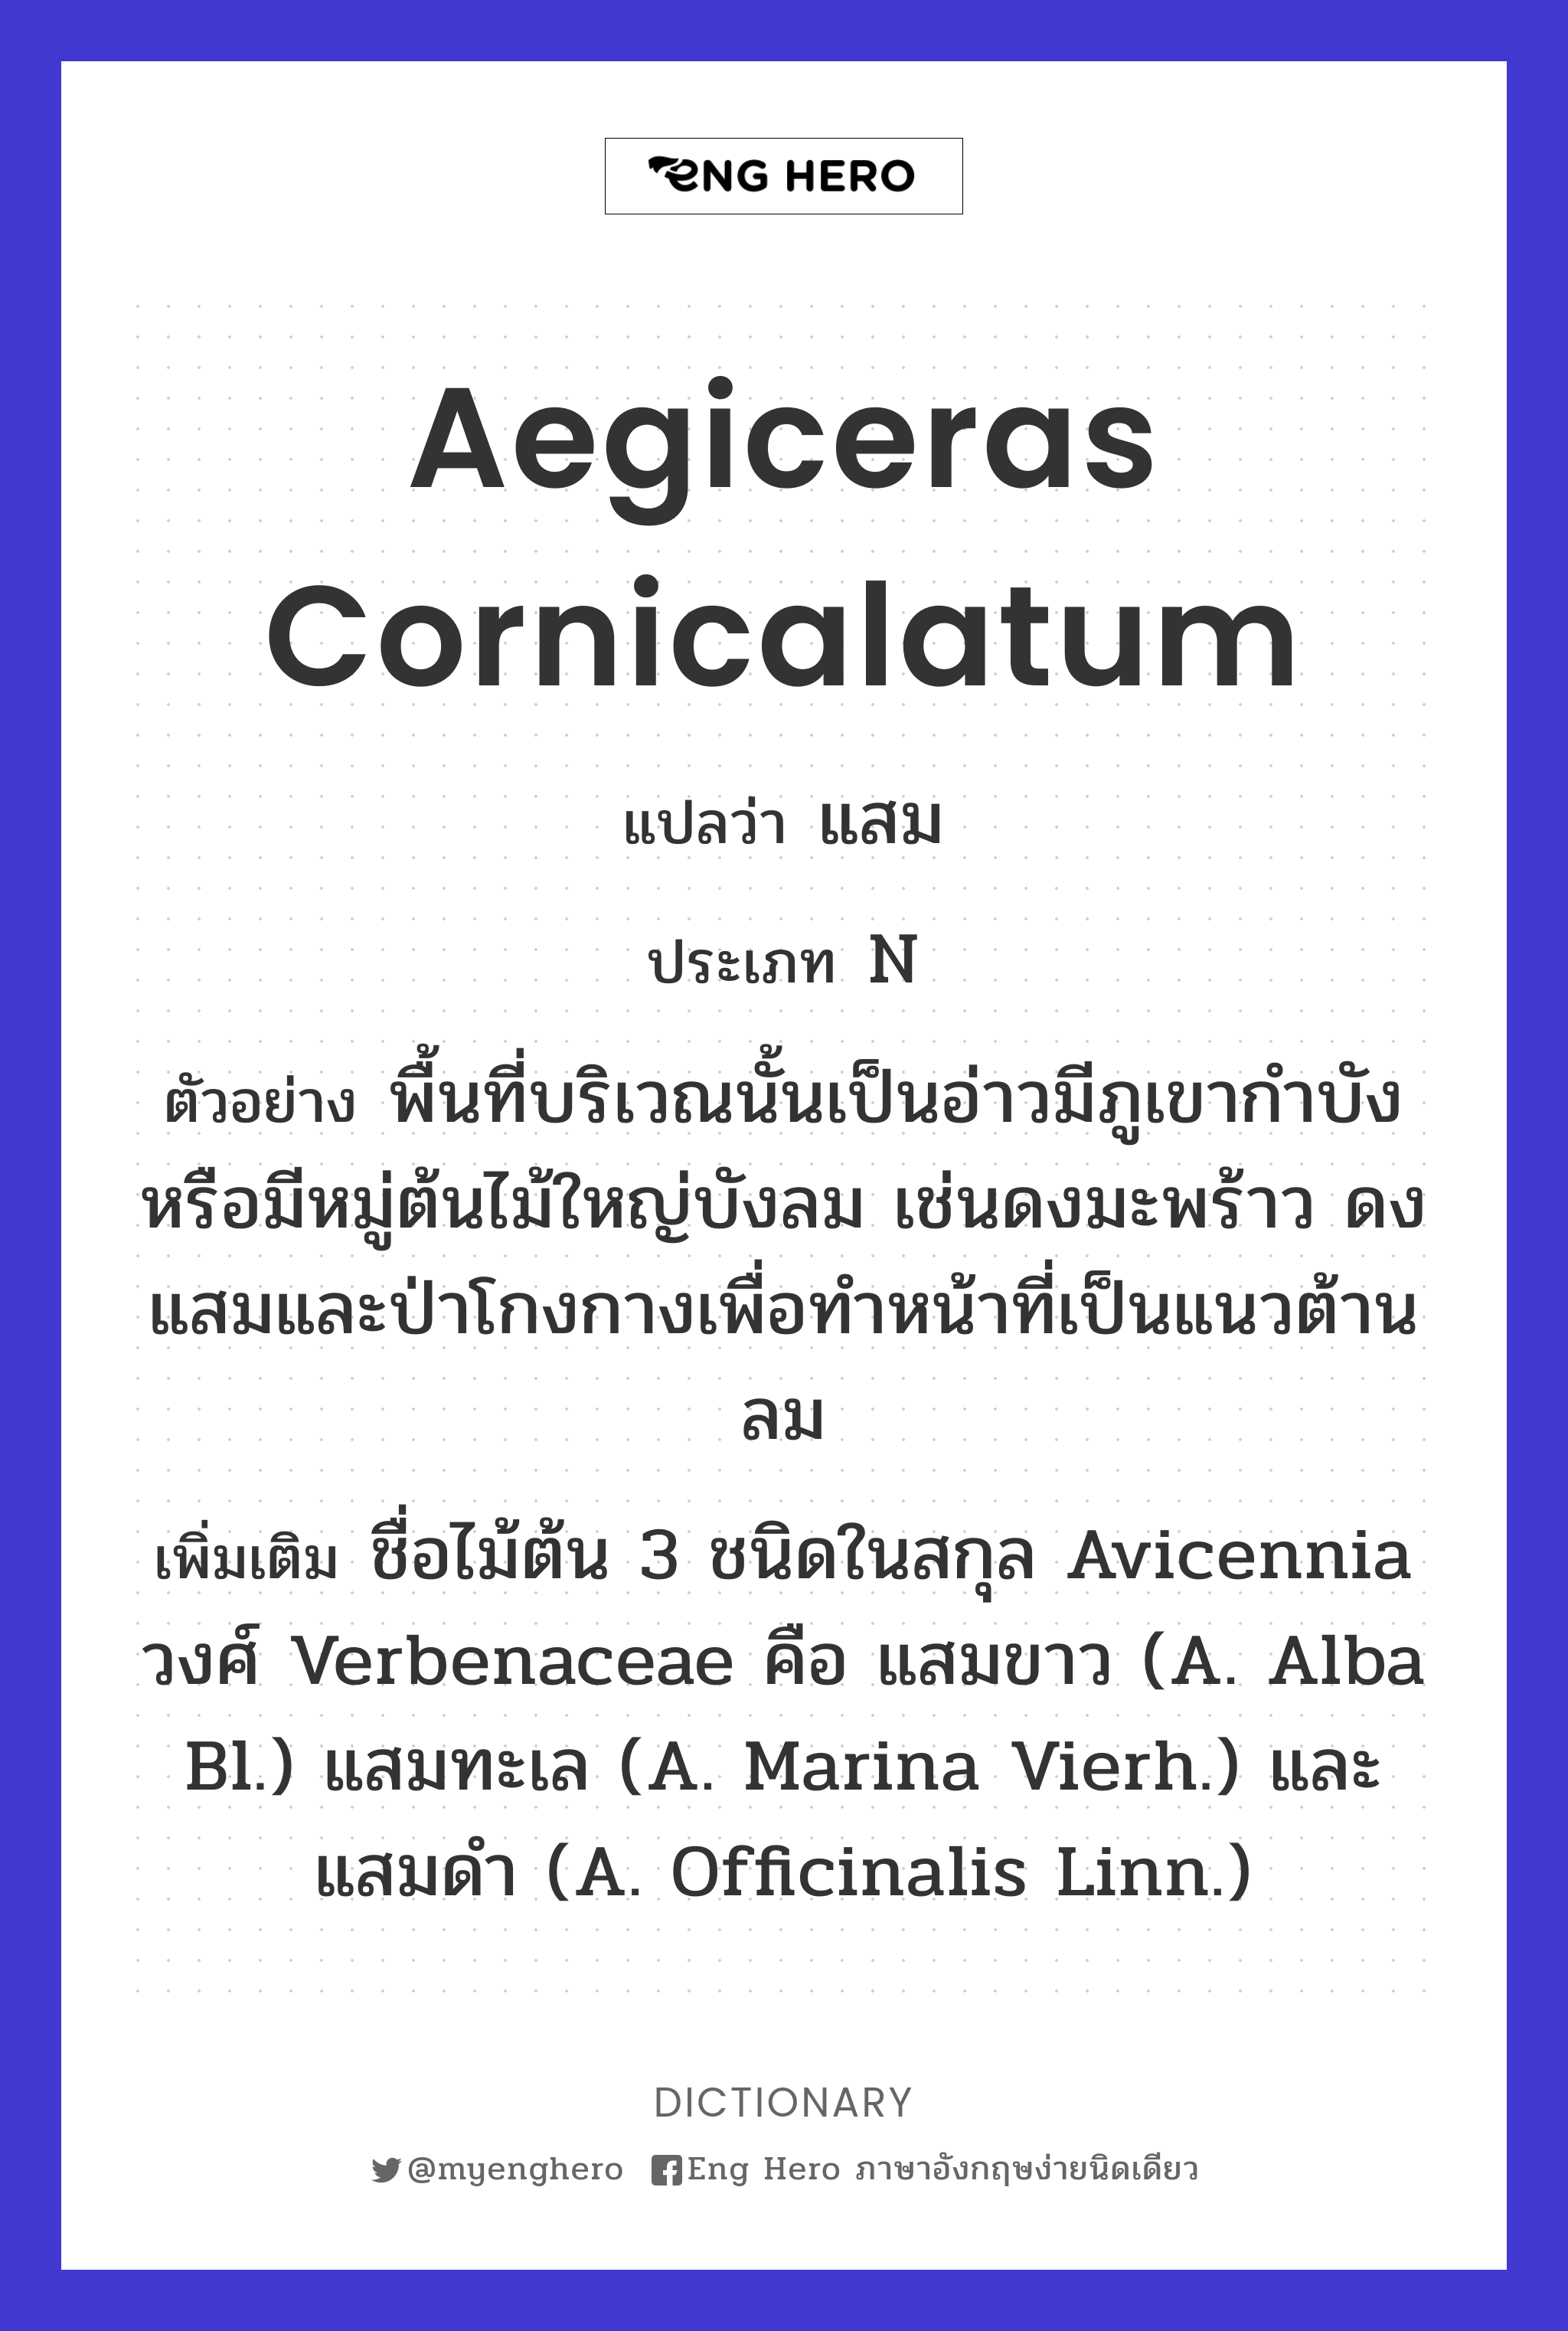 Aegiceras cornicalatum